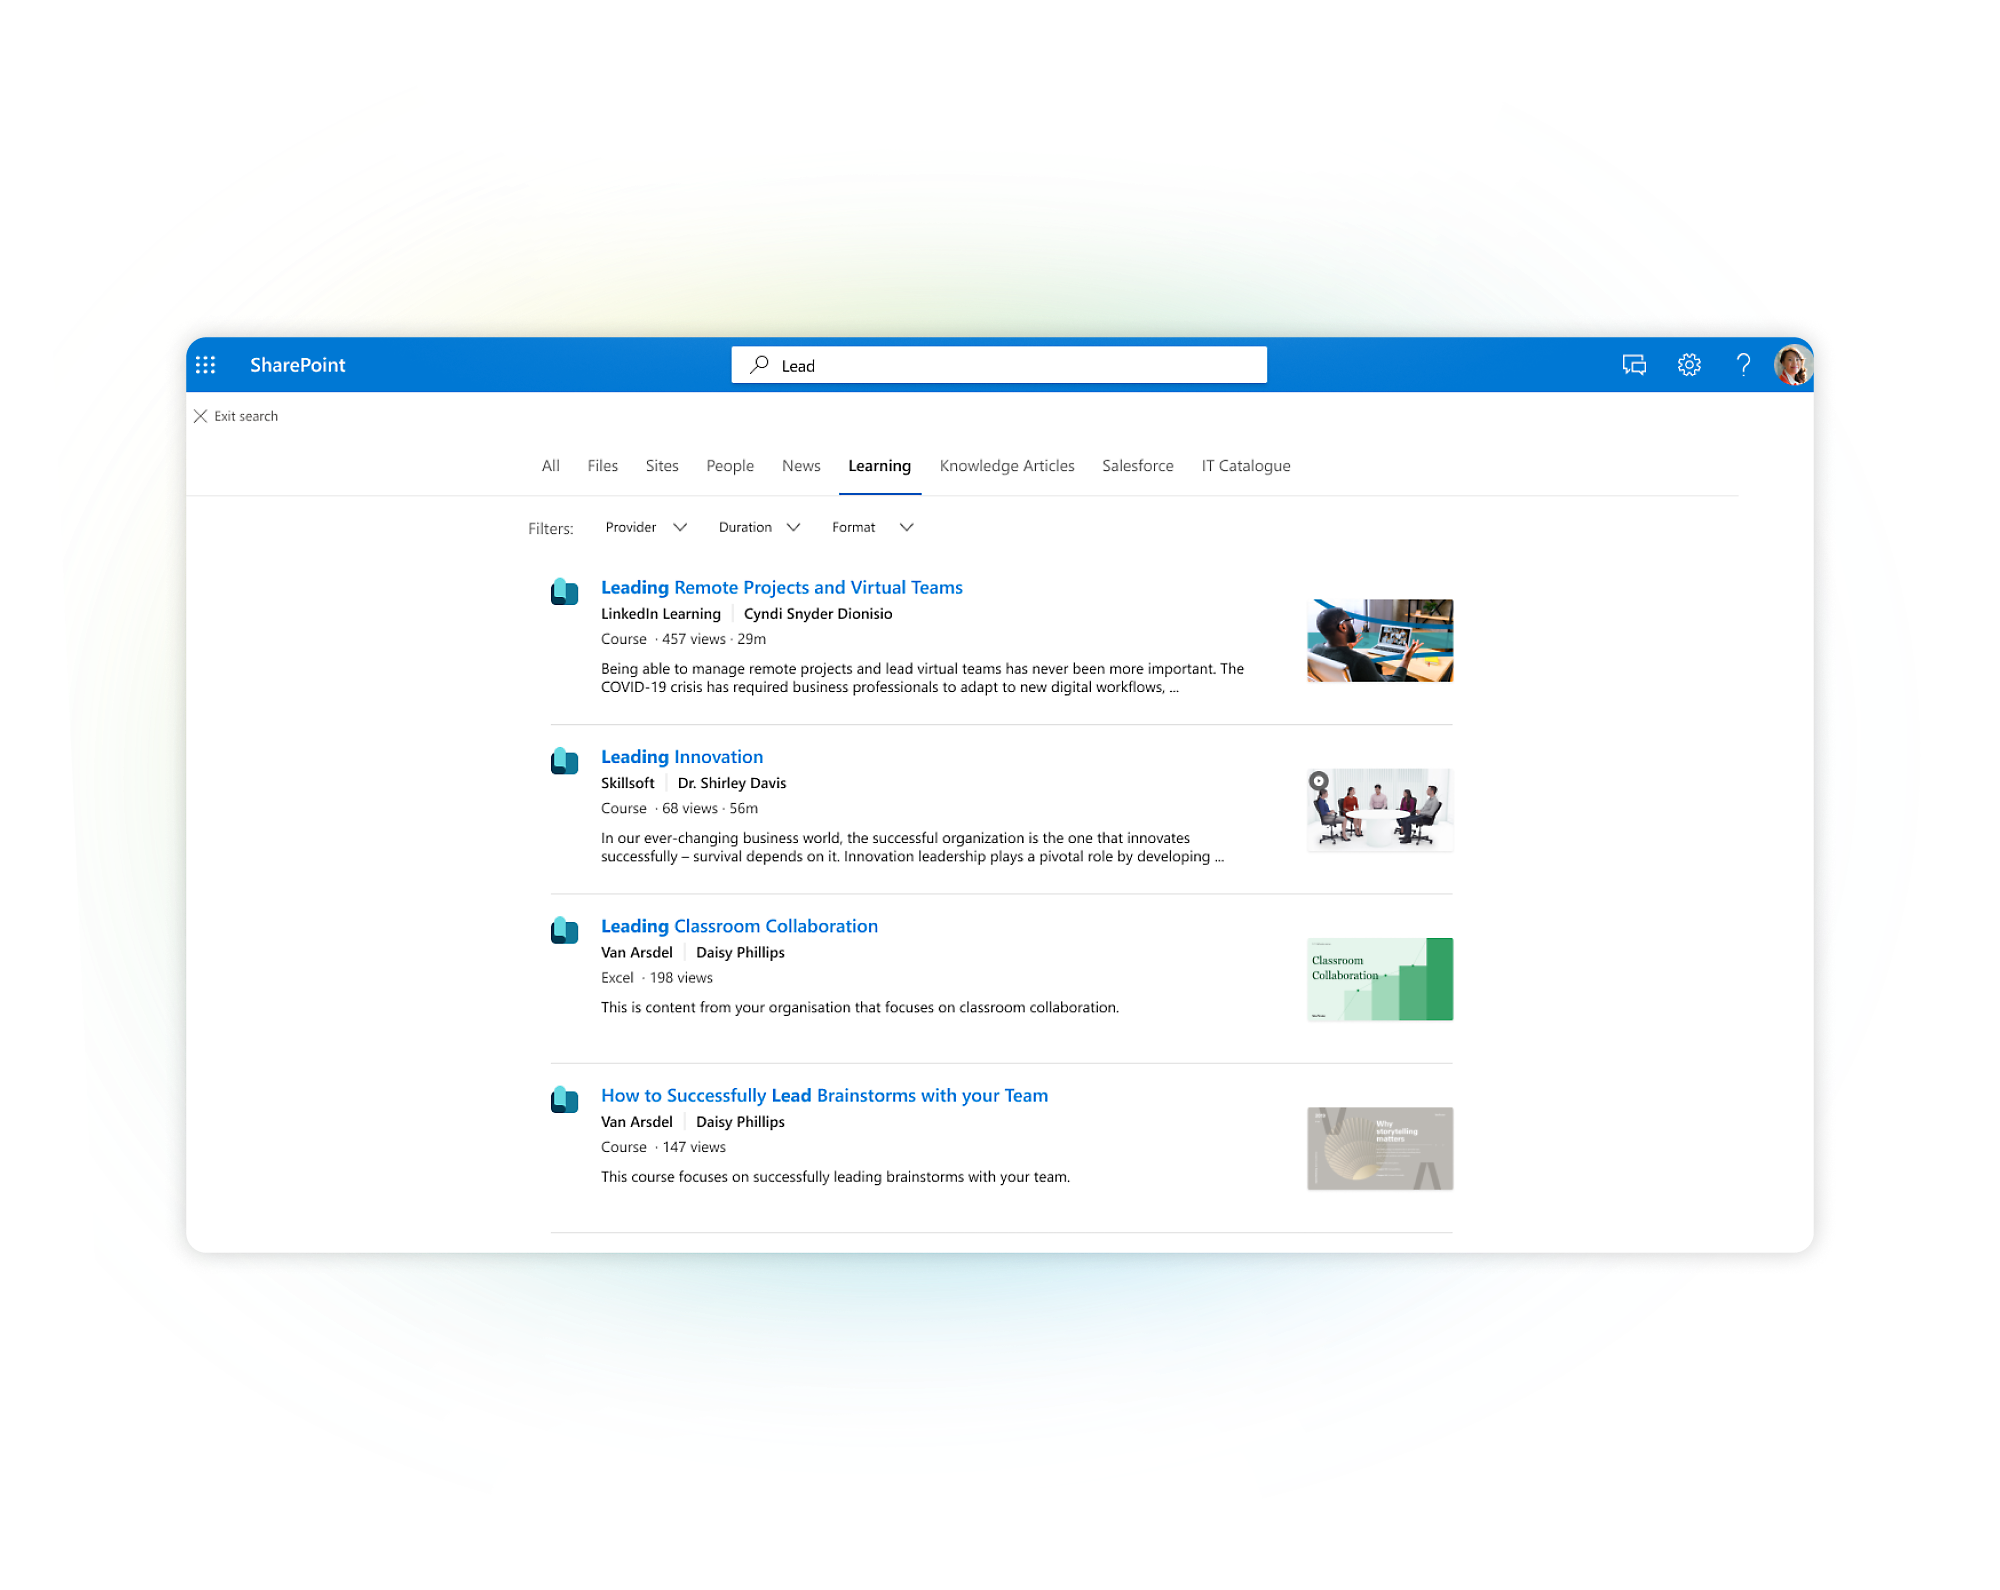 SharePoint 瀏覽：檔案，網站，人員。課程包括遠端專案、創新、課堂協作、頭腦風暴